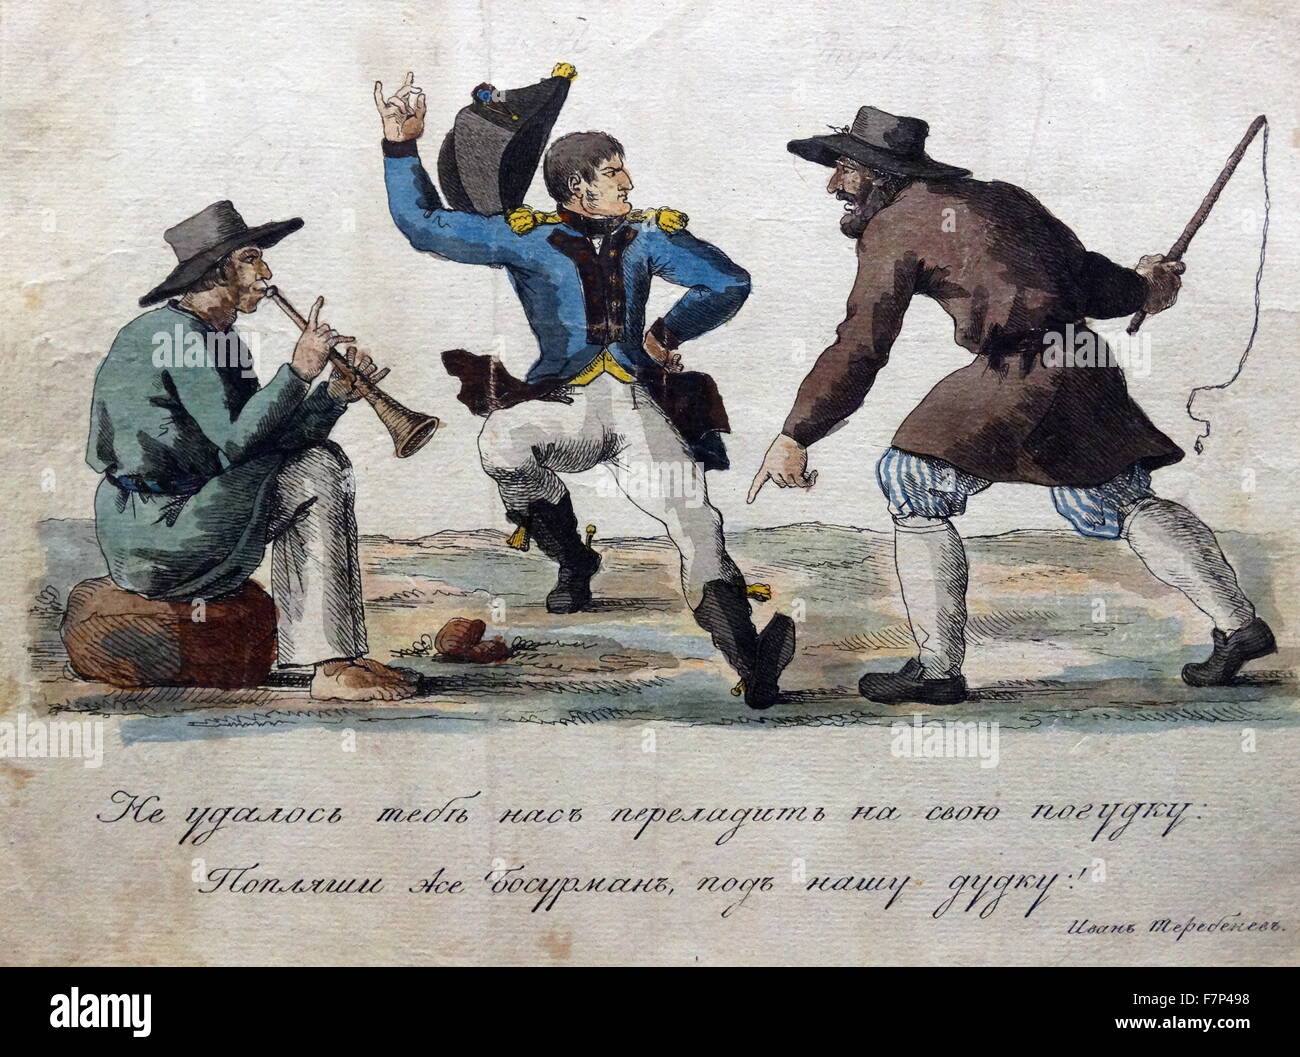 Handkolorierten Radierung mit dem Titel "Russen Lehre Boney Tanz" vom russischen Künstler Ivan Ivanovitch Terebenev (1780-1815). Datierte 1813 Stockfoto